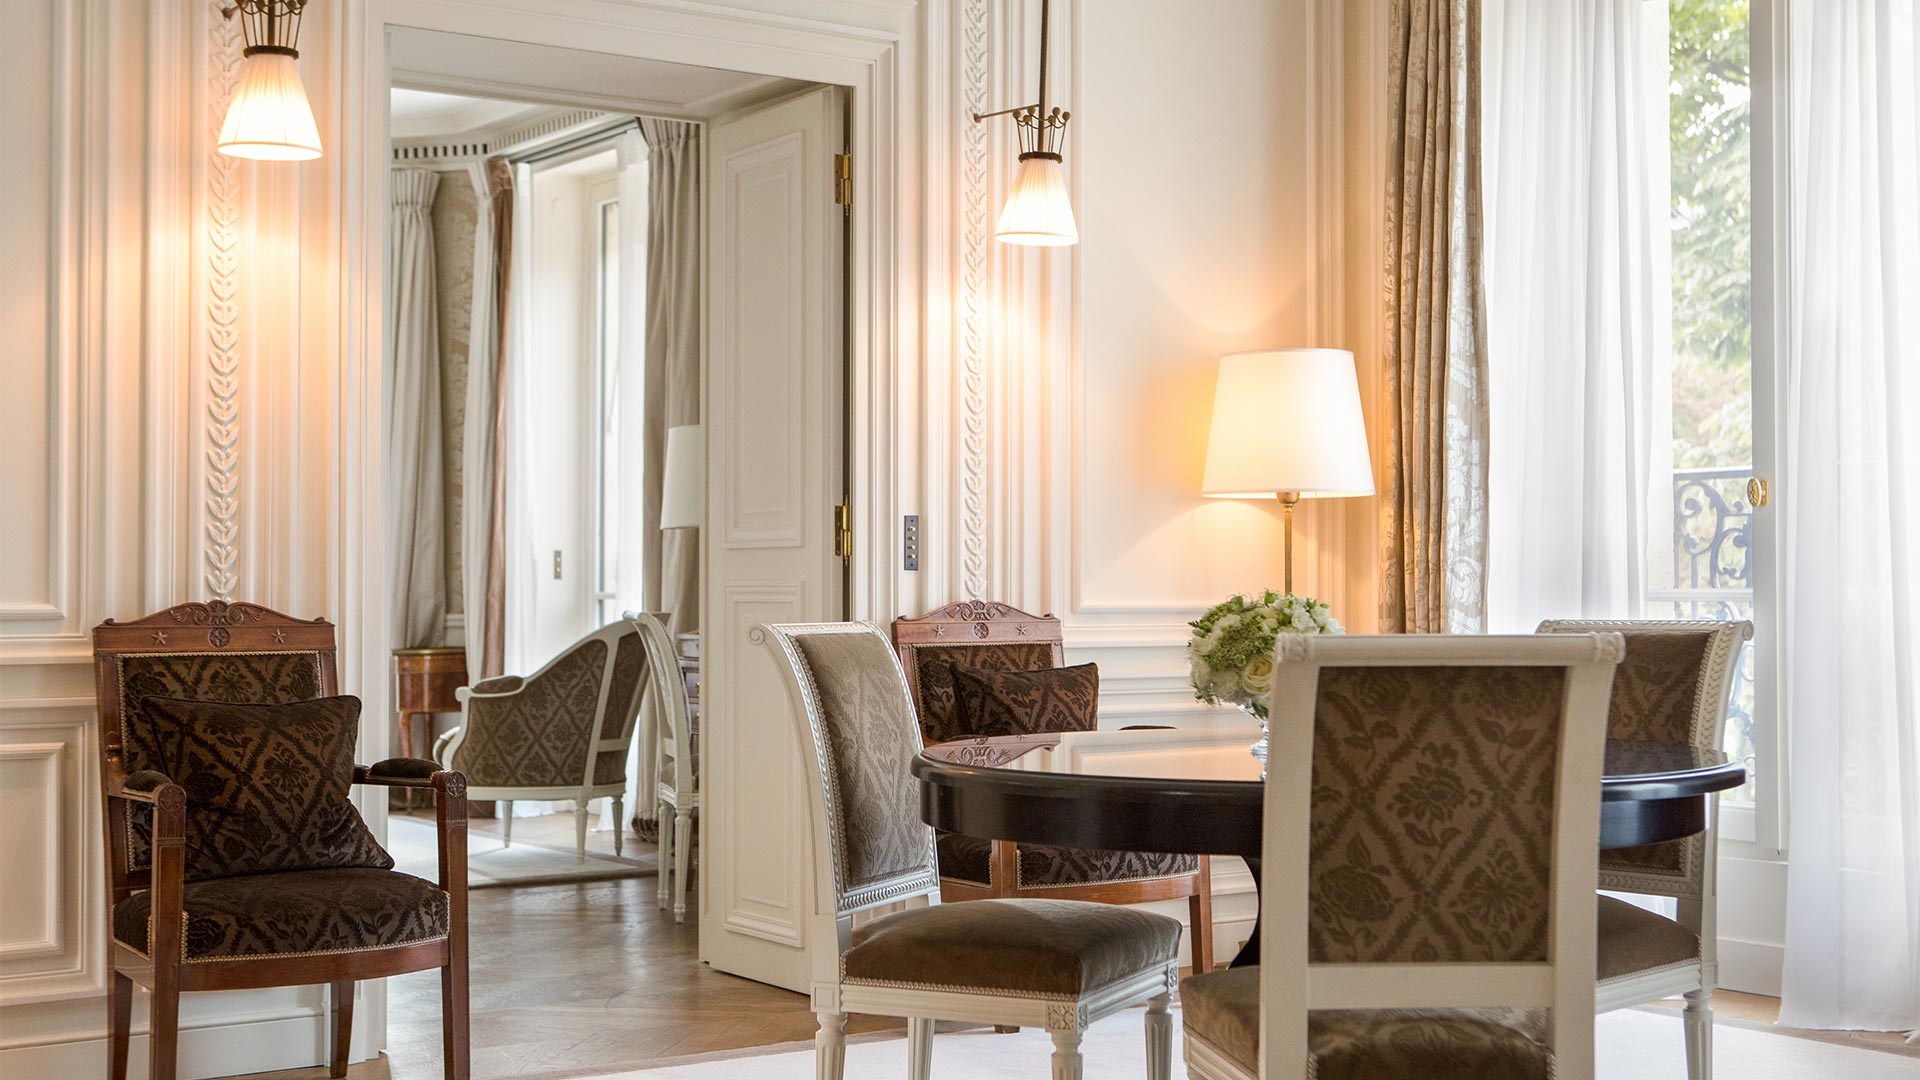 Reserve de Paris, Luxury Hotel France, Duc de Morny Suite, Casol